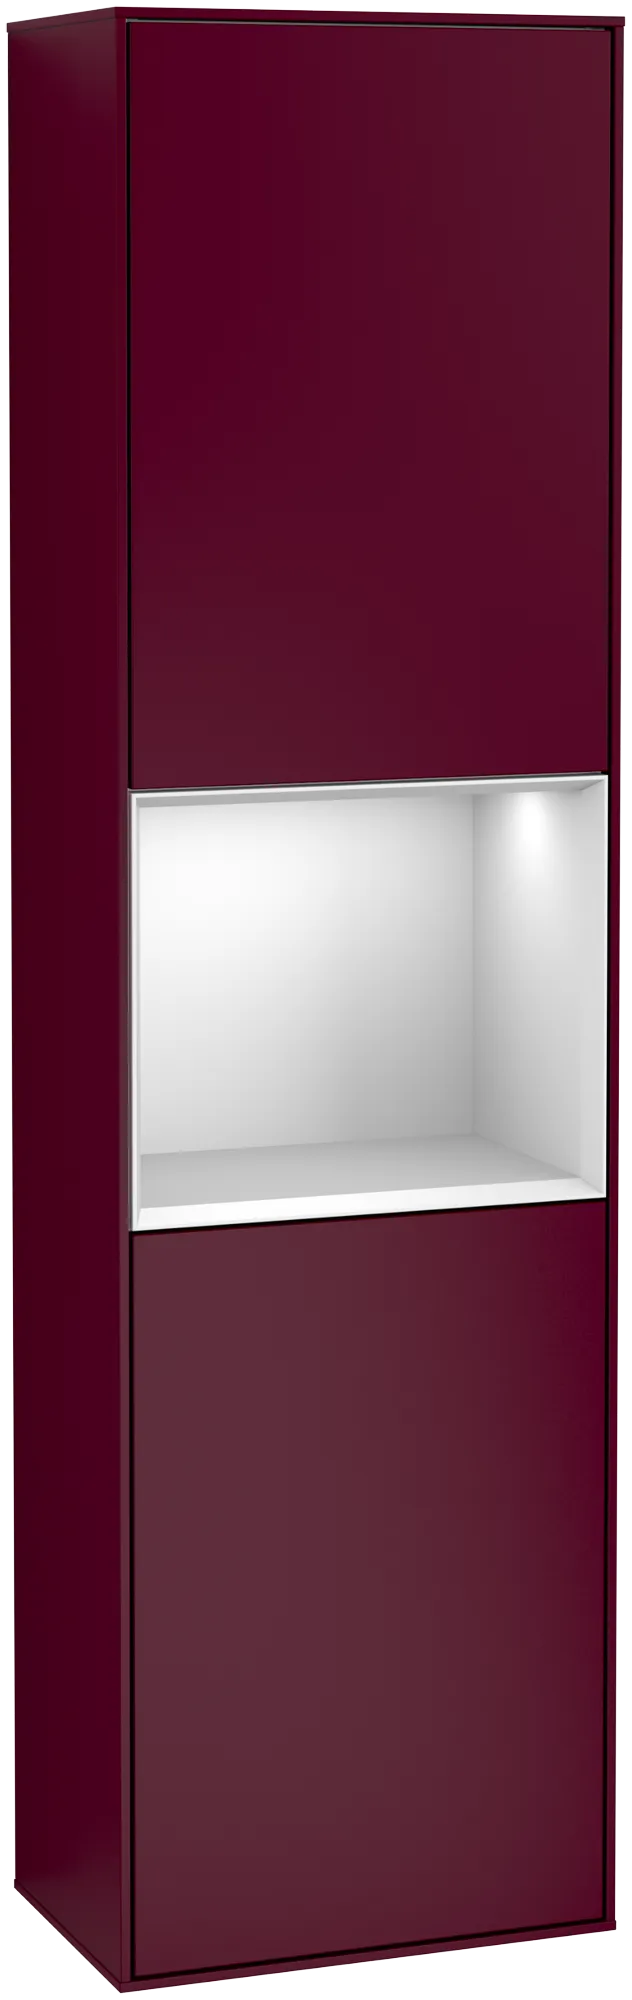 Bild von VILLEROY BOCH Finion Hochschrank, mit Beleuchtung, 2 Türen, 418 x 1516 x 270 mm, Peony Matt Lacquer / White Matt Lacquer #G470MTHB